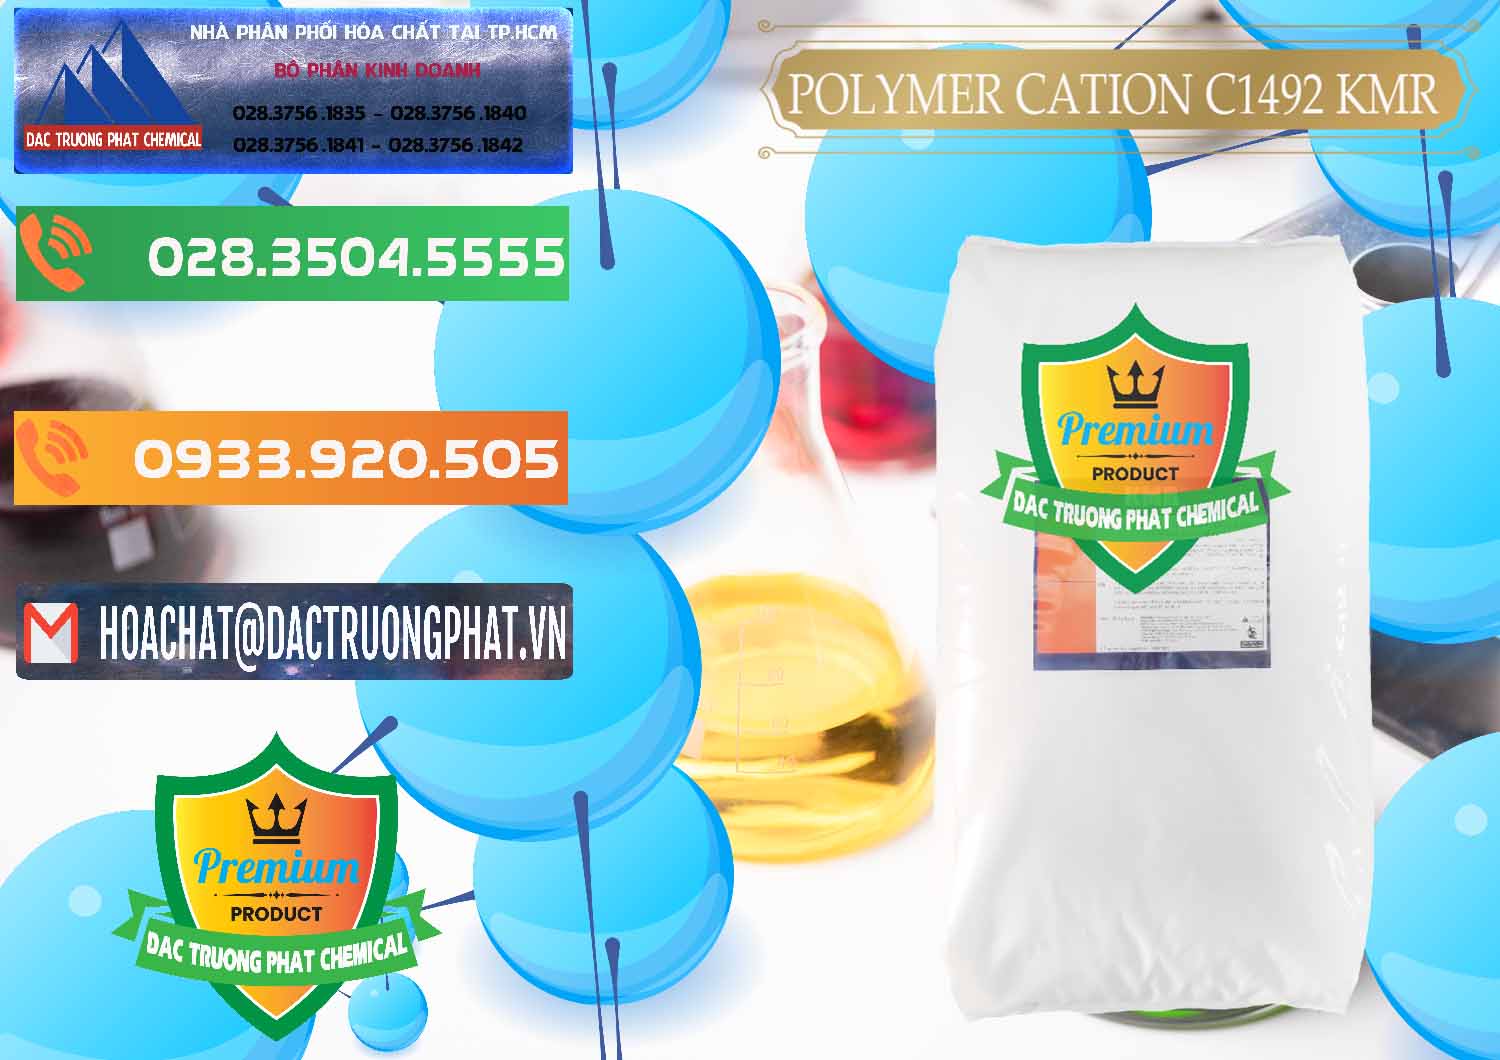 Cty phân phối ( bán ) Polymer Cation C1492 - KMR Anh Quốc England - 0121 - Công ty kinh doanh ( cung cấp ) hóa chất tại TP.HCM - hoachatxulynuoc.com.vn